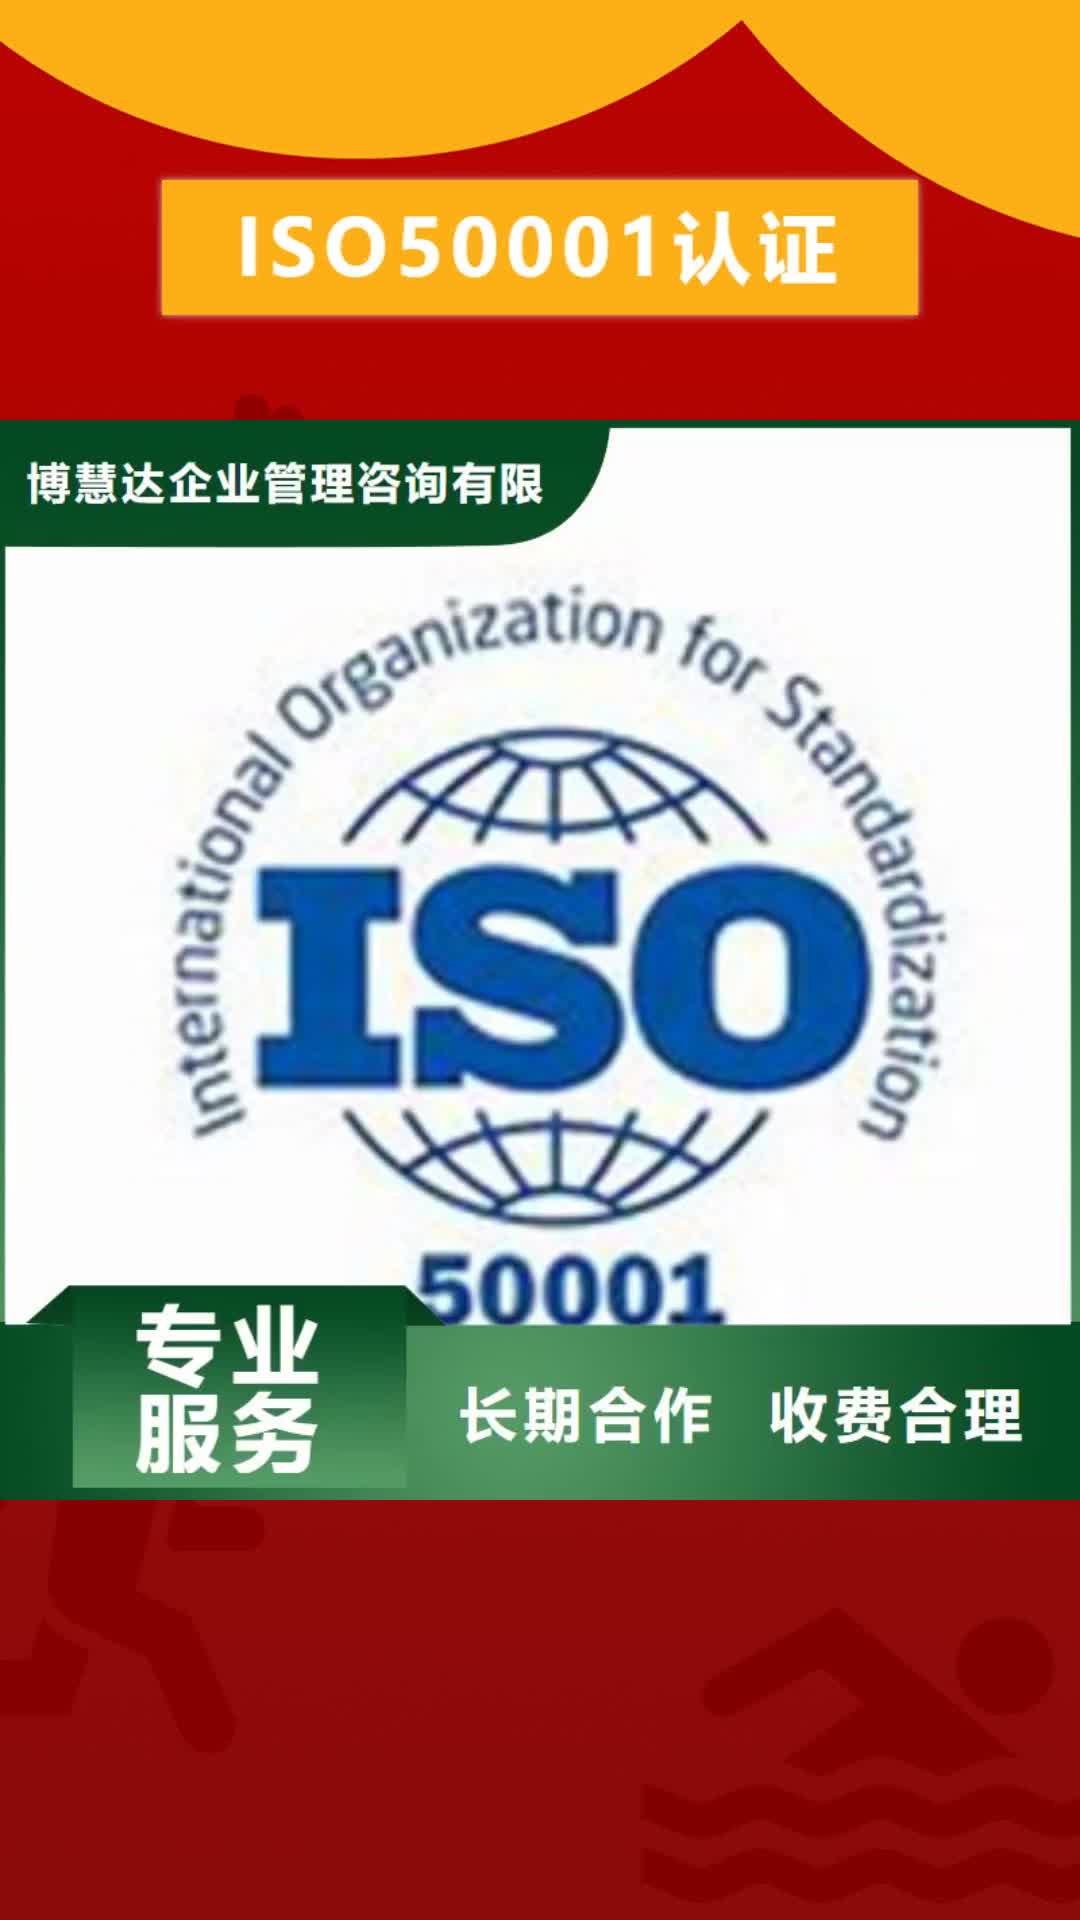 苏州 ISO50001认证,【知识产权认证/GB29490】实力团队